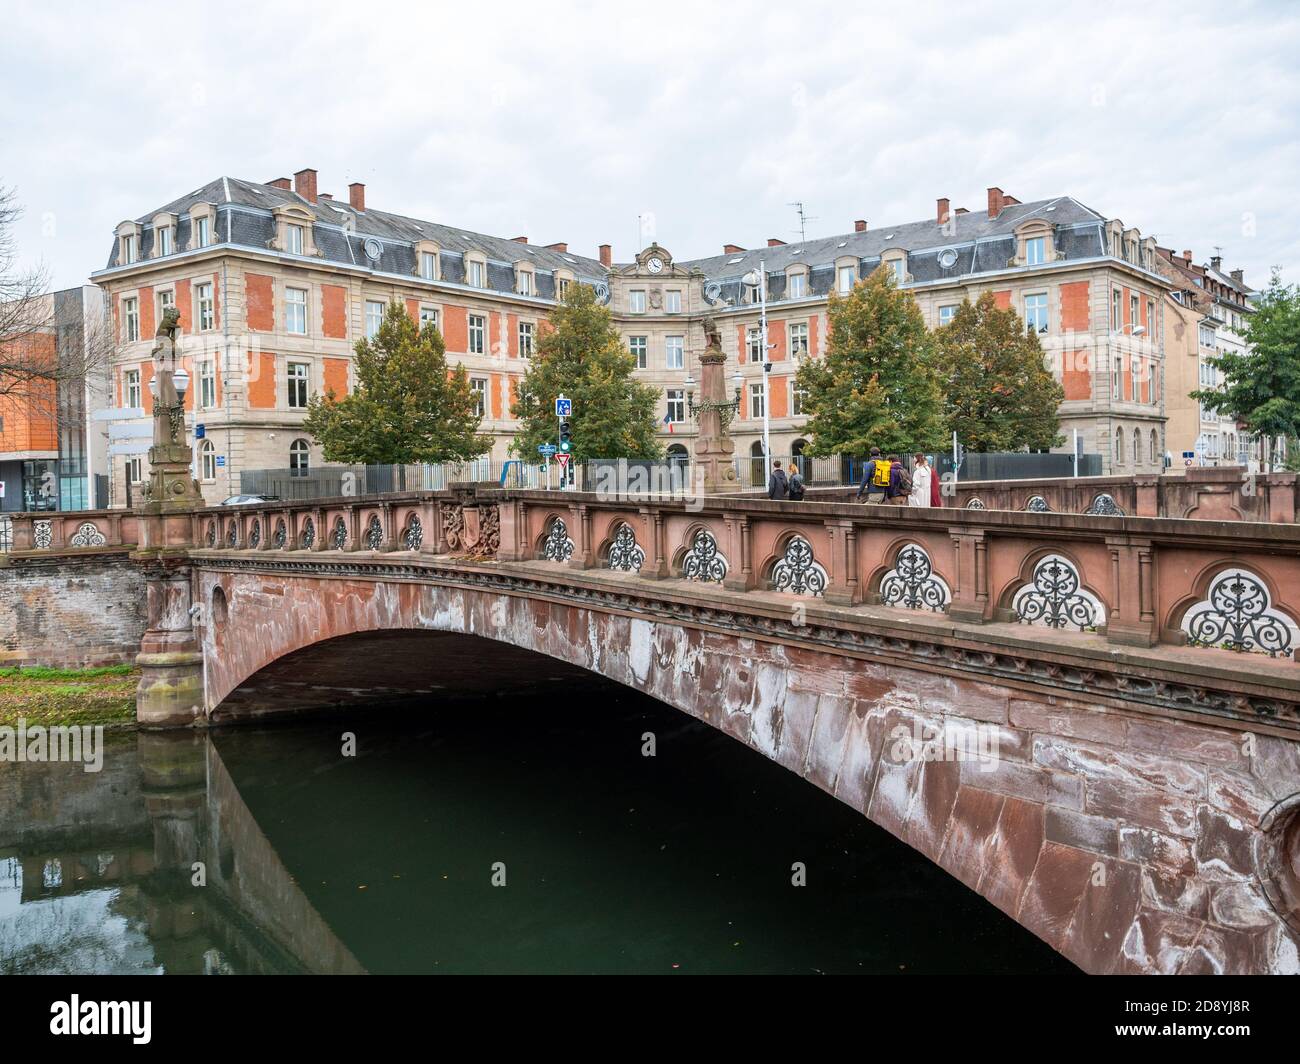 Straßburg, Frankreich - 18. Okt 2020: Pont de la Fonderie Brücke mit Grundschule Schoepflins im Hintergrund - französisches Bildungsgebäude Stockfoto